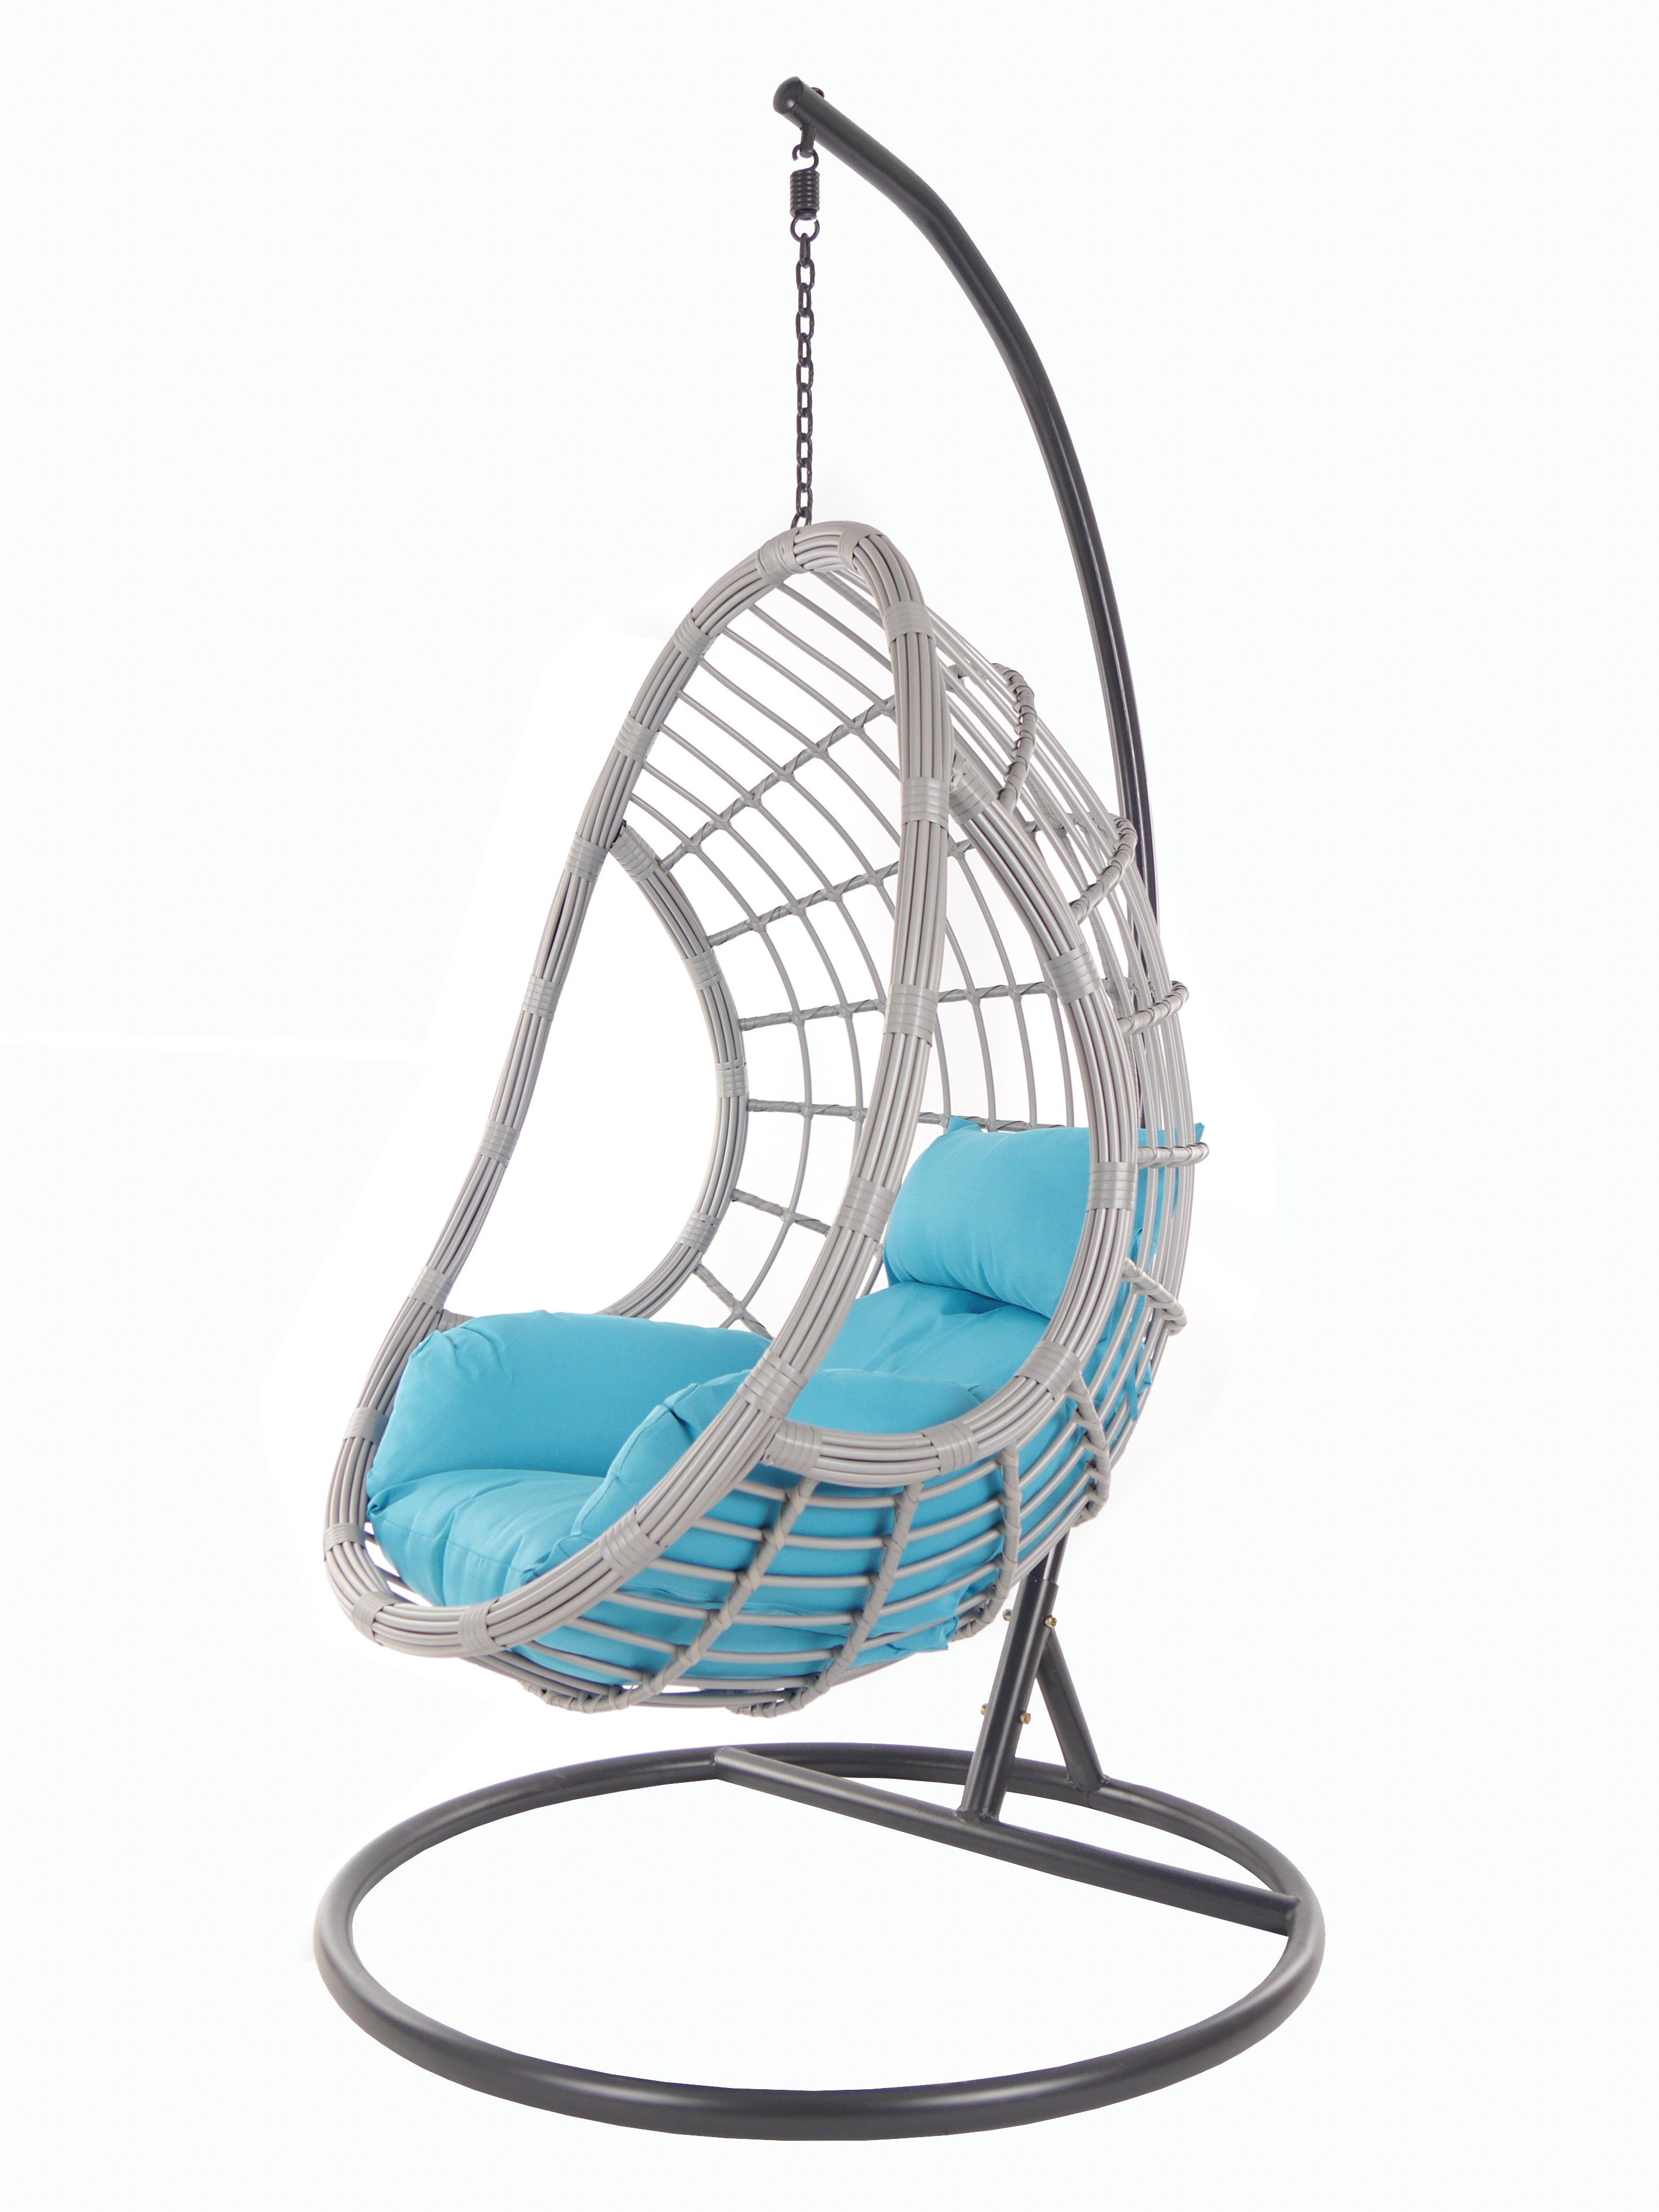 KIDEO Hängesessel PALMANOVA lightgrey, Schwebesessel mit Gestell und Kissen, Swing Chair, Loungemöbel hellblau (5050 skyblue)